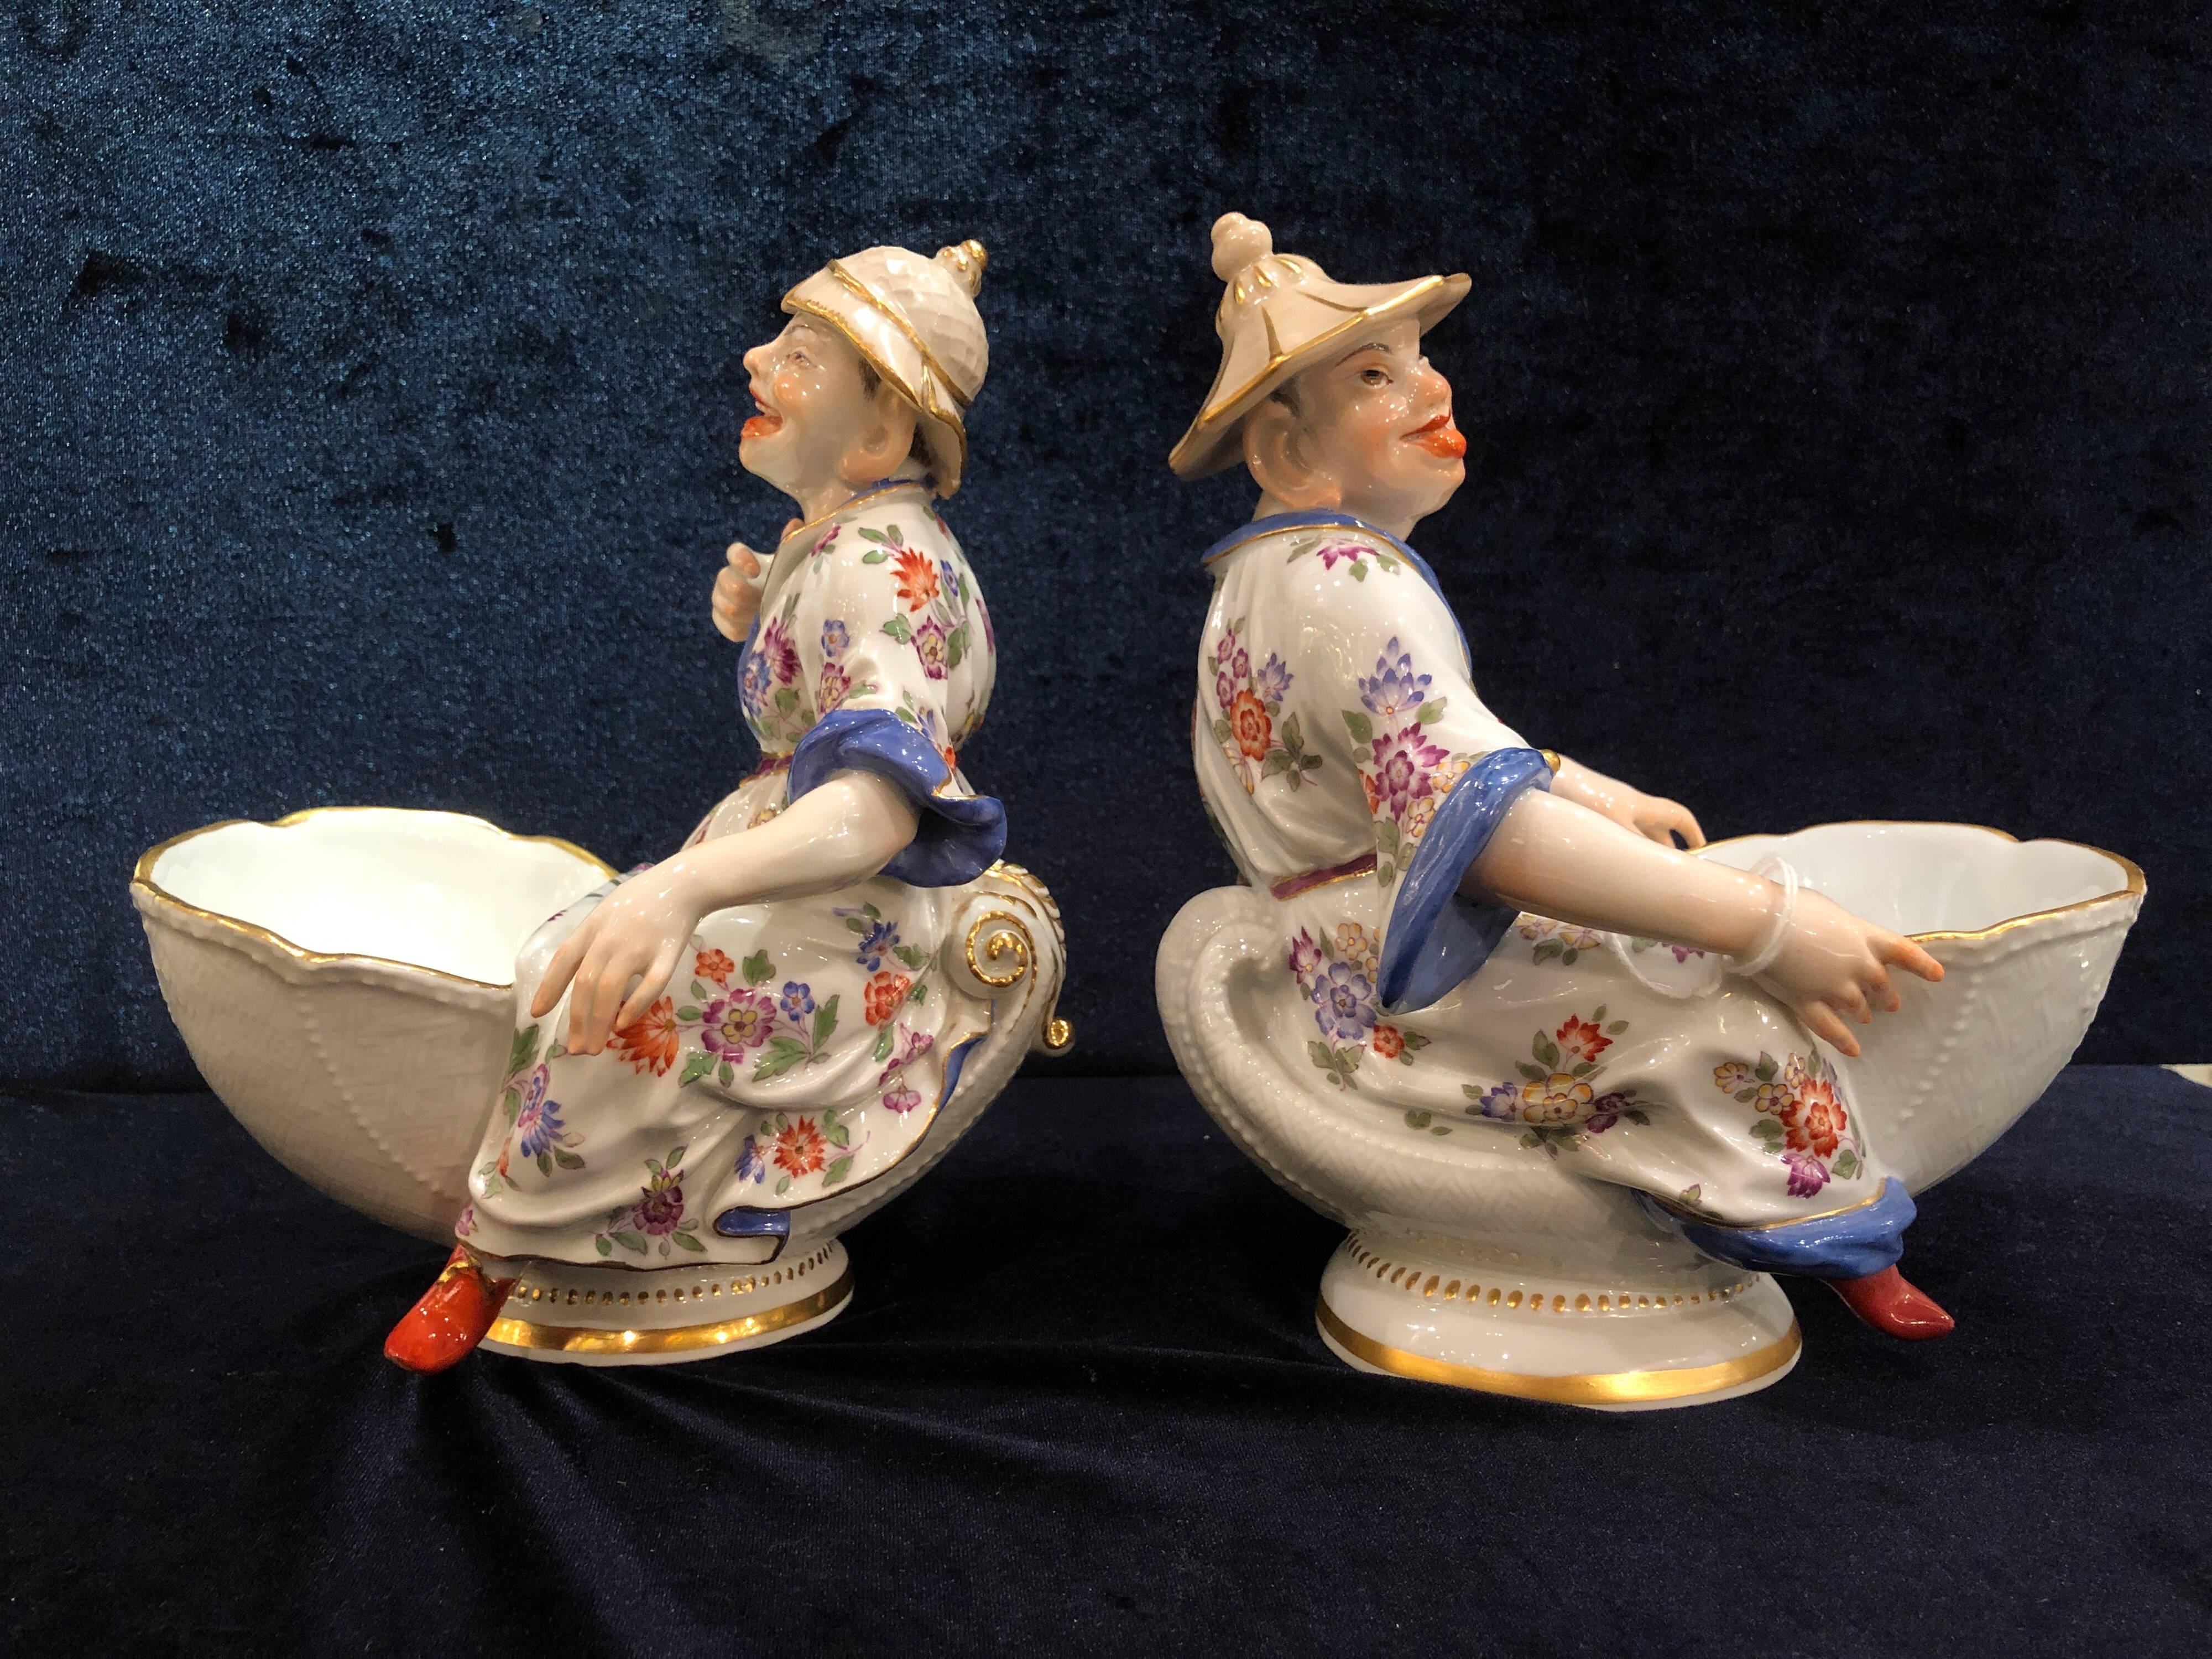 Une belle paire de plats à sucrerie figuratifs en porcelaine de Meissen, d'après un modèle de J.J. Kandler
Chacune avec une figure de chinoiserie Malabar assise sur un coquillage et tenant un bol devant elle, décor incisé en vannerie sur les